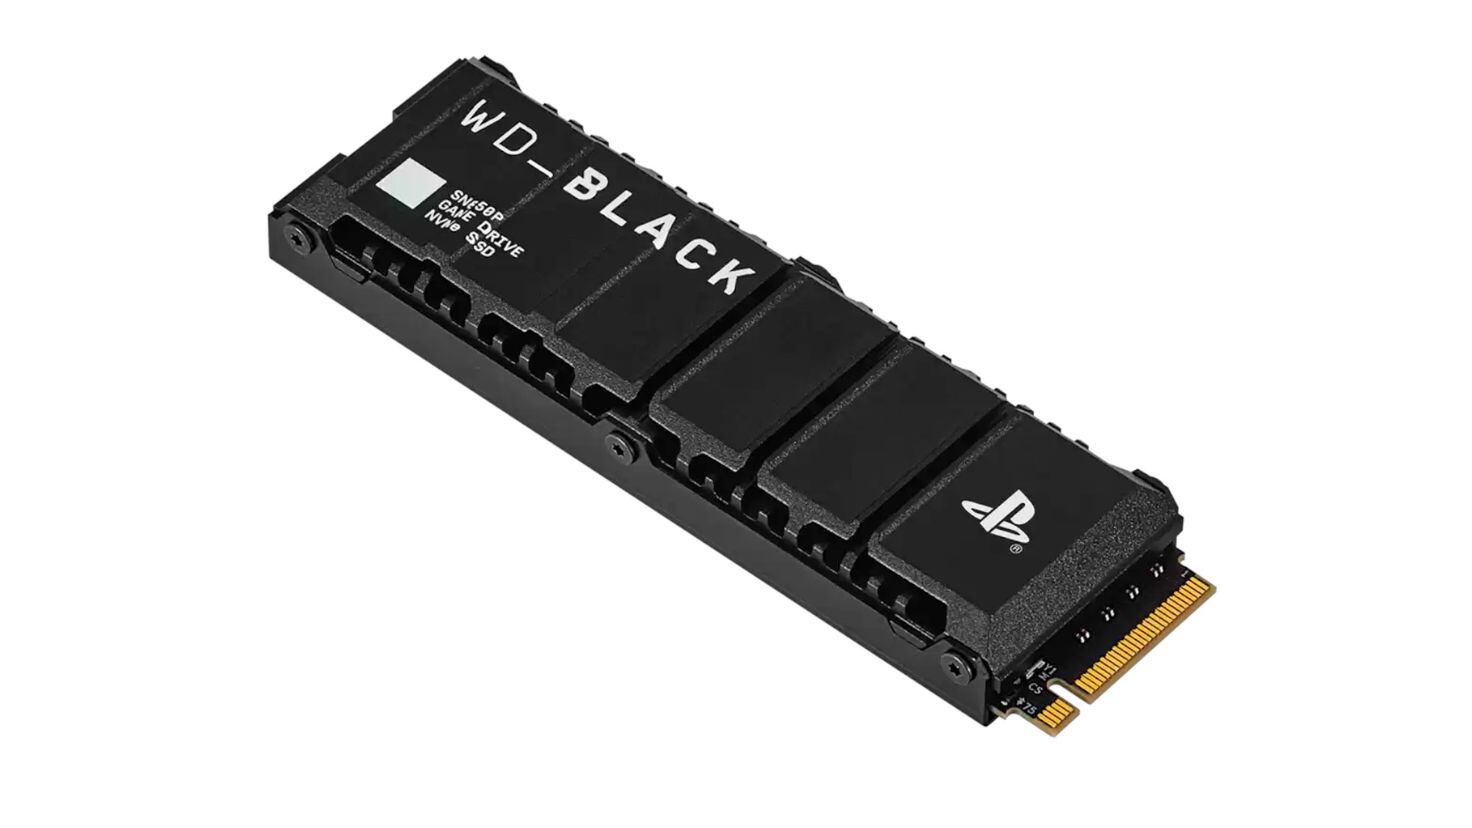 WD_Black SN850p un SSD enfocado a la PS5 que también funciona bien en PC